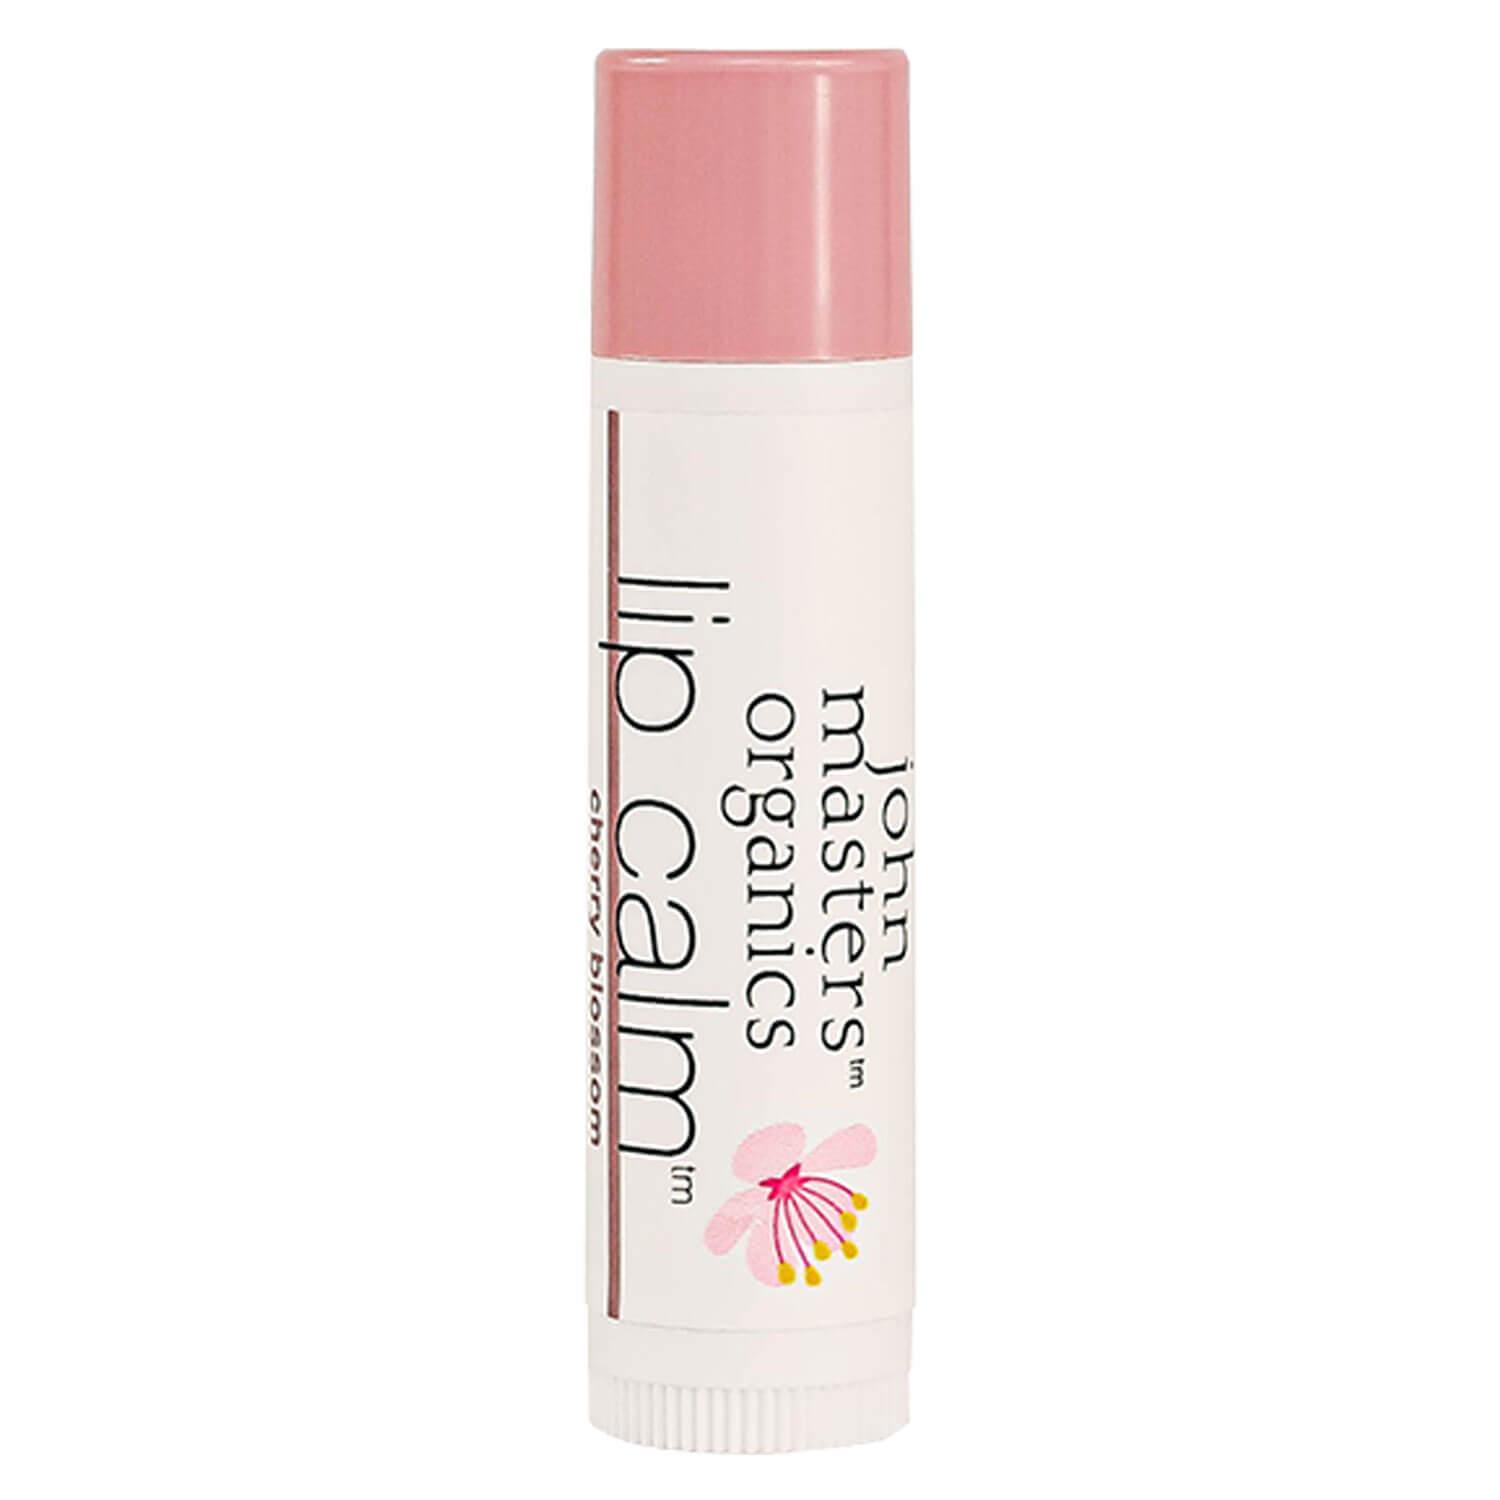 JMO Skin & Body Care - Lip Calm Cherry Blossom